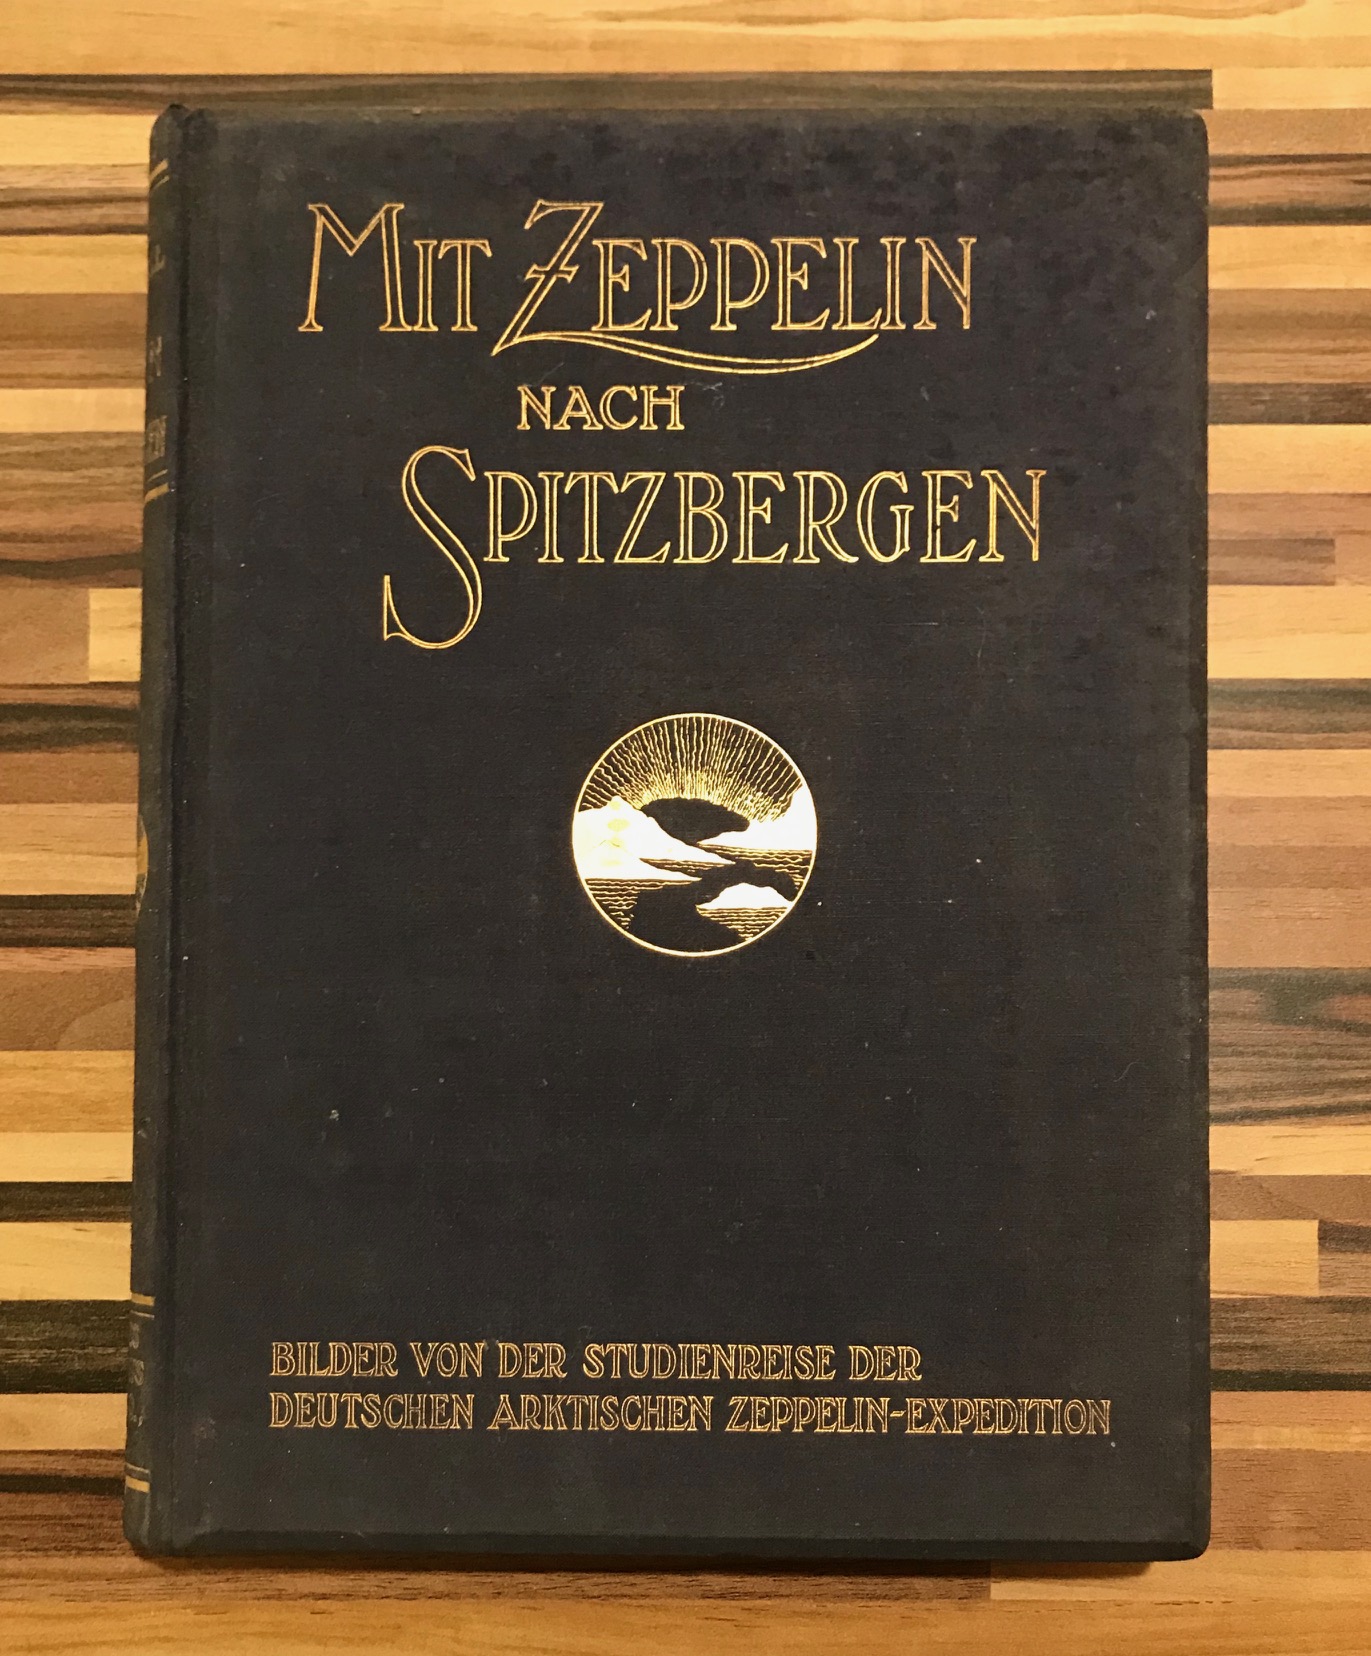 Mit Zeppelin nach Spitzbergen. Bilder von der Studienreise der deutschen arktischen Zeppelin-Expedition.